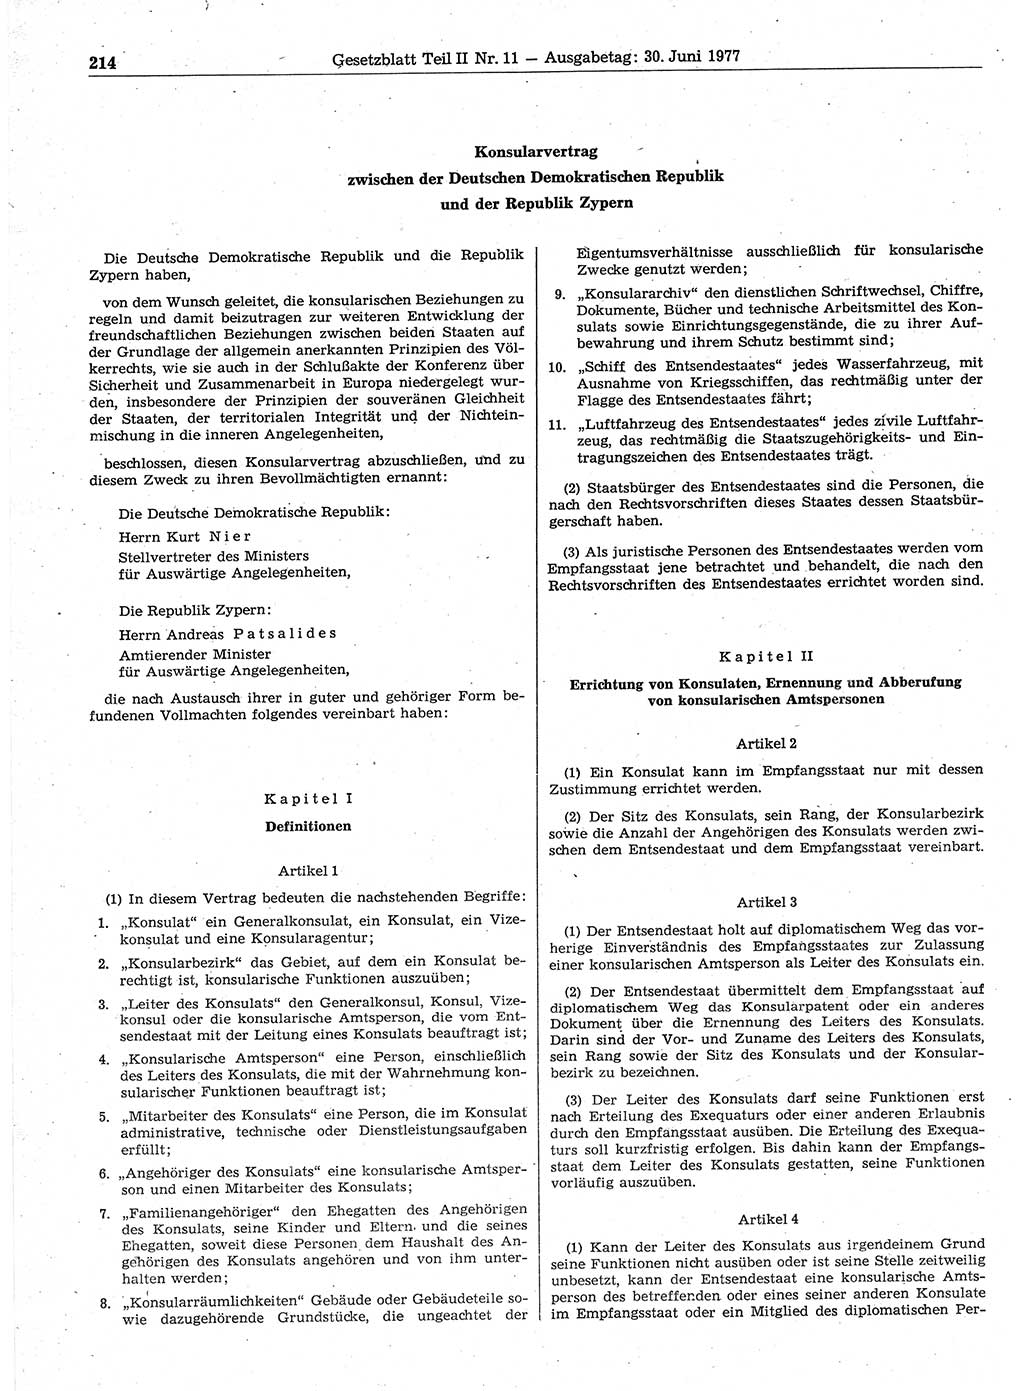 Gesetzblatt (GBl.) der Deutschen Demokratischen Republik (DDR) Teil ⅠⅠ 1977, Seite 214 (GBl. DDR ⅠⅠ 1977, S. 214)